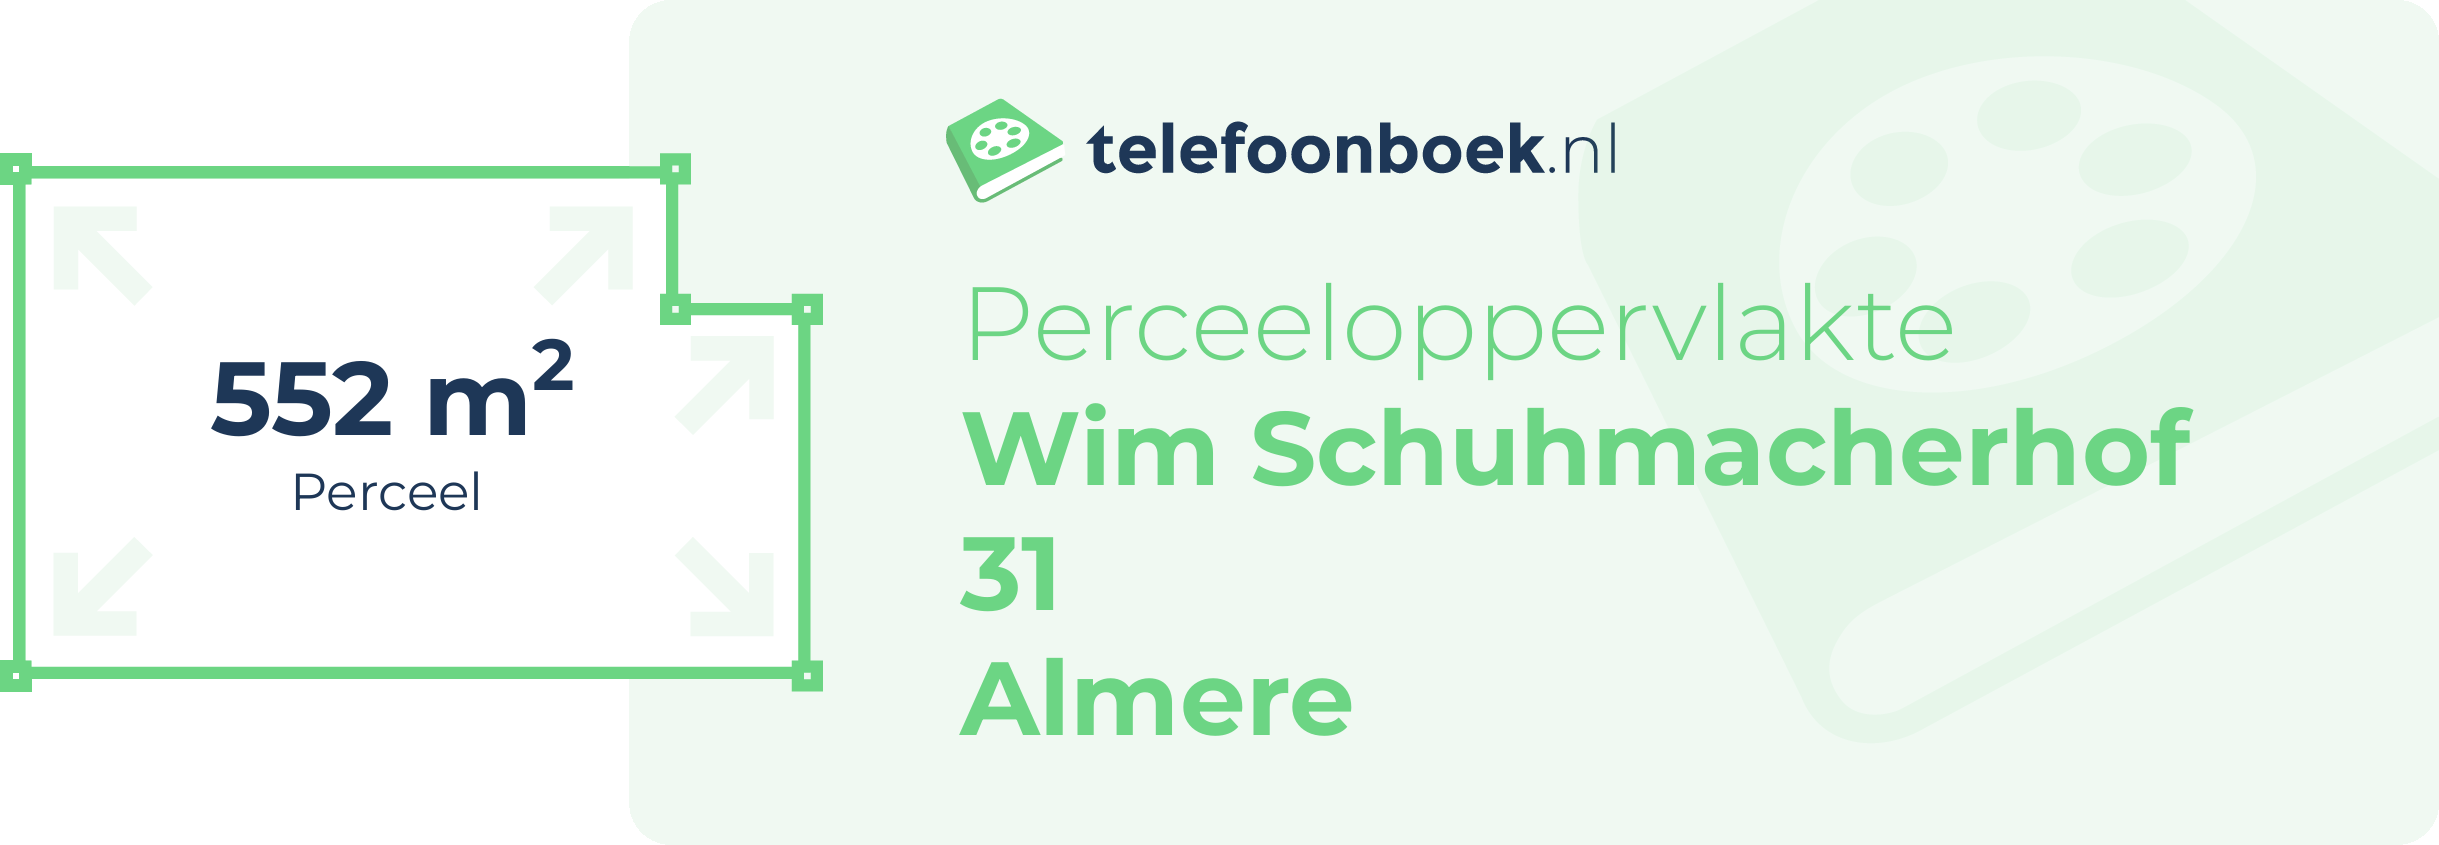 Perceeloppervlakte Wim Schuhmacherhof 31 Almere